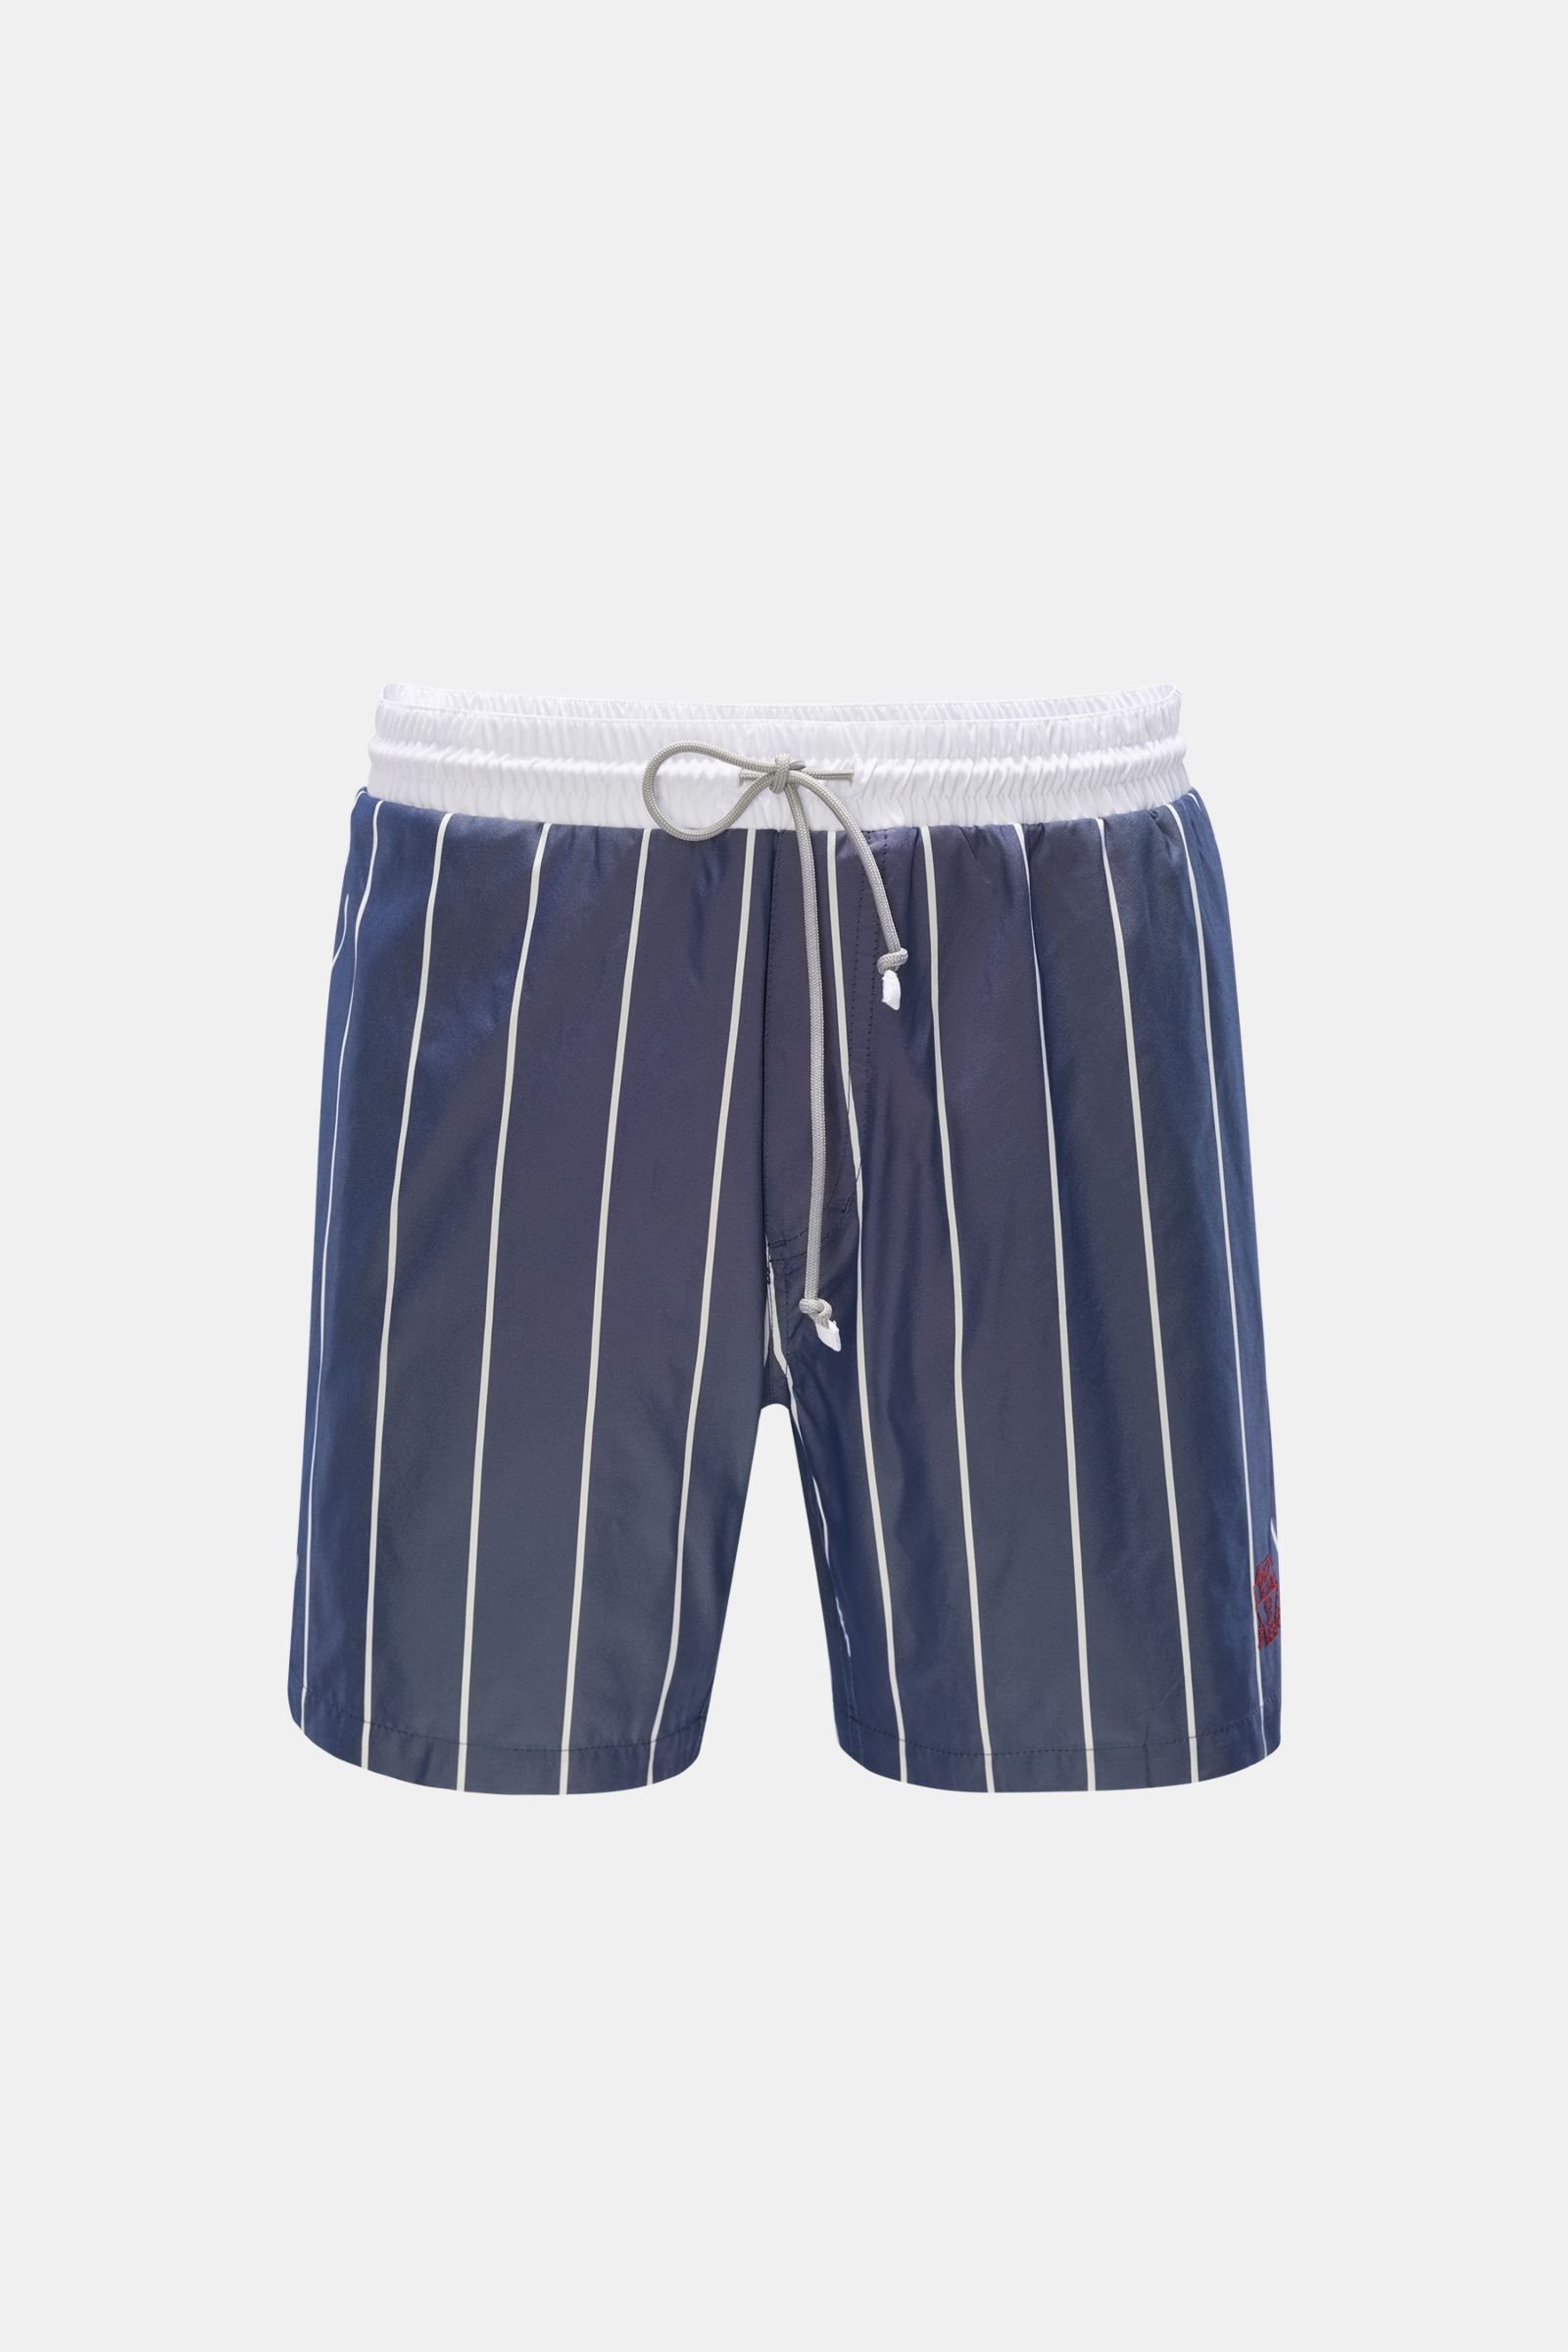 BRUNELLO CUCINELLI swim shorts grey-blue striped | BRAUN Hamburg